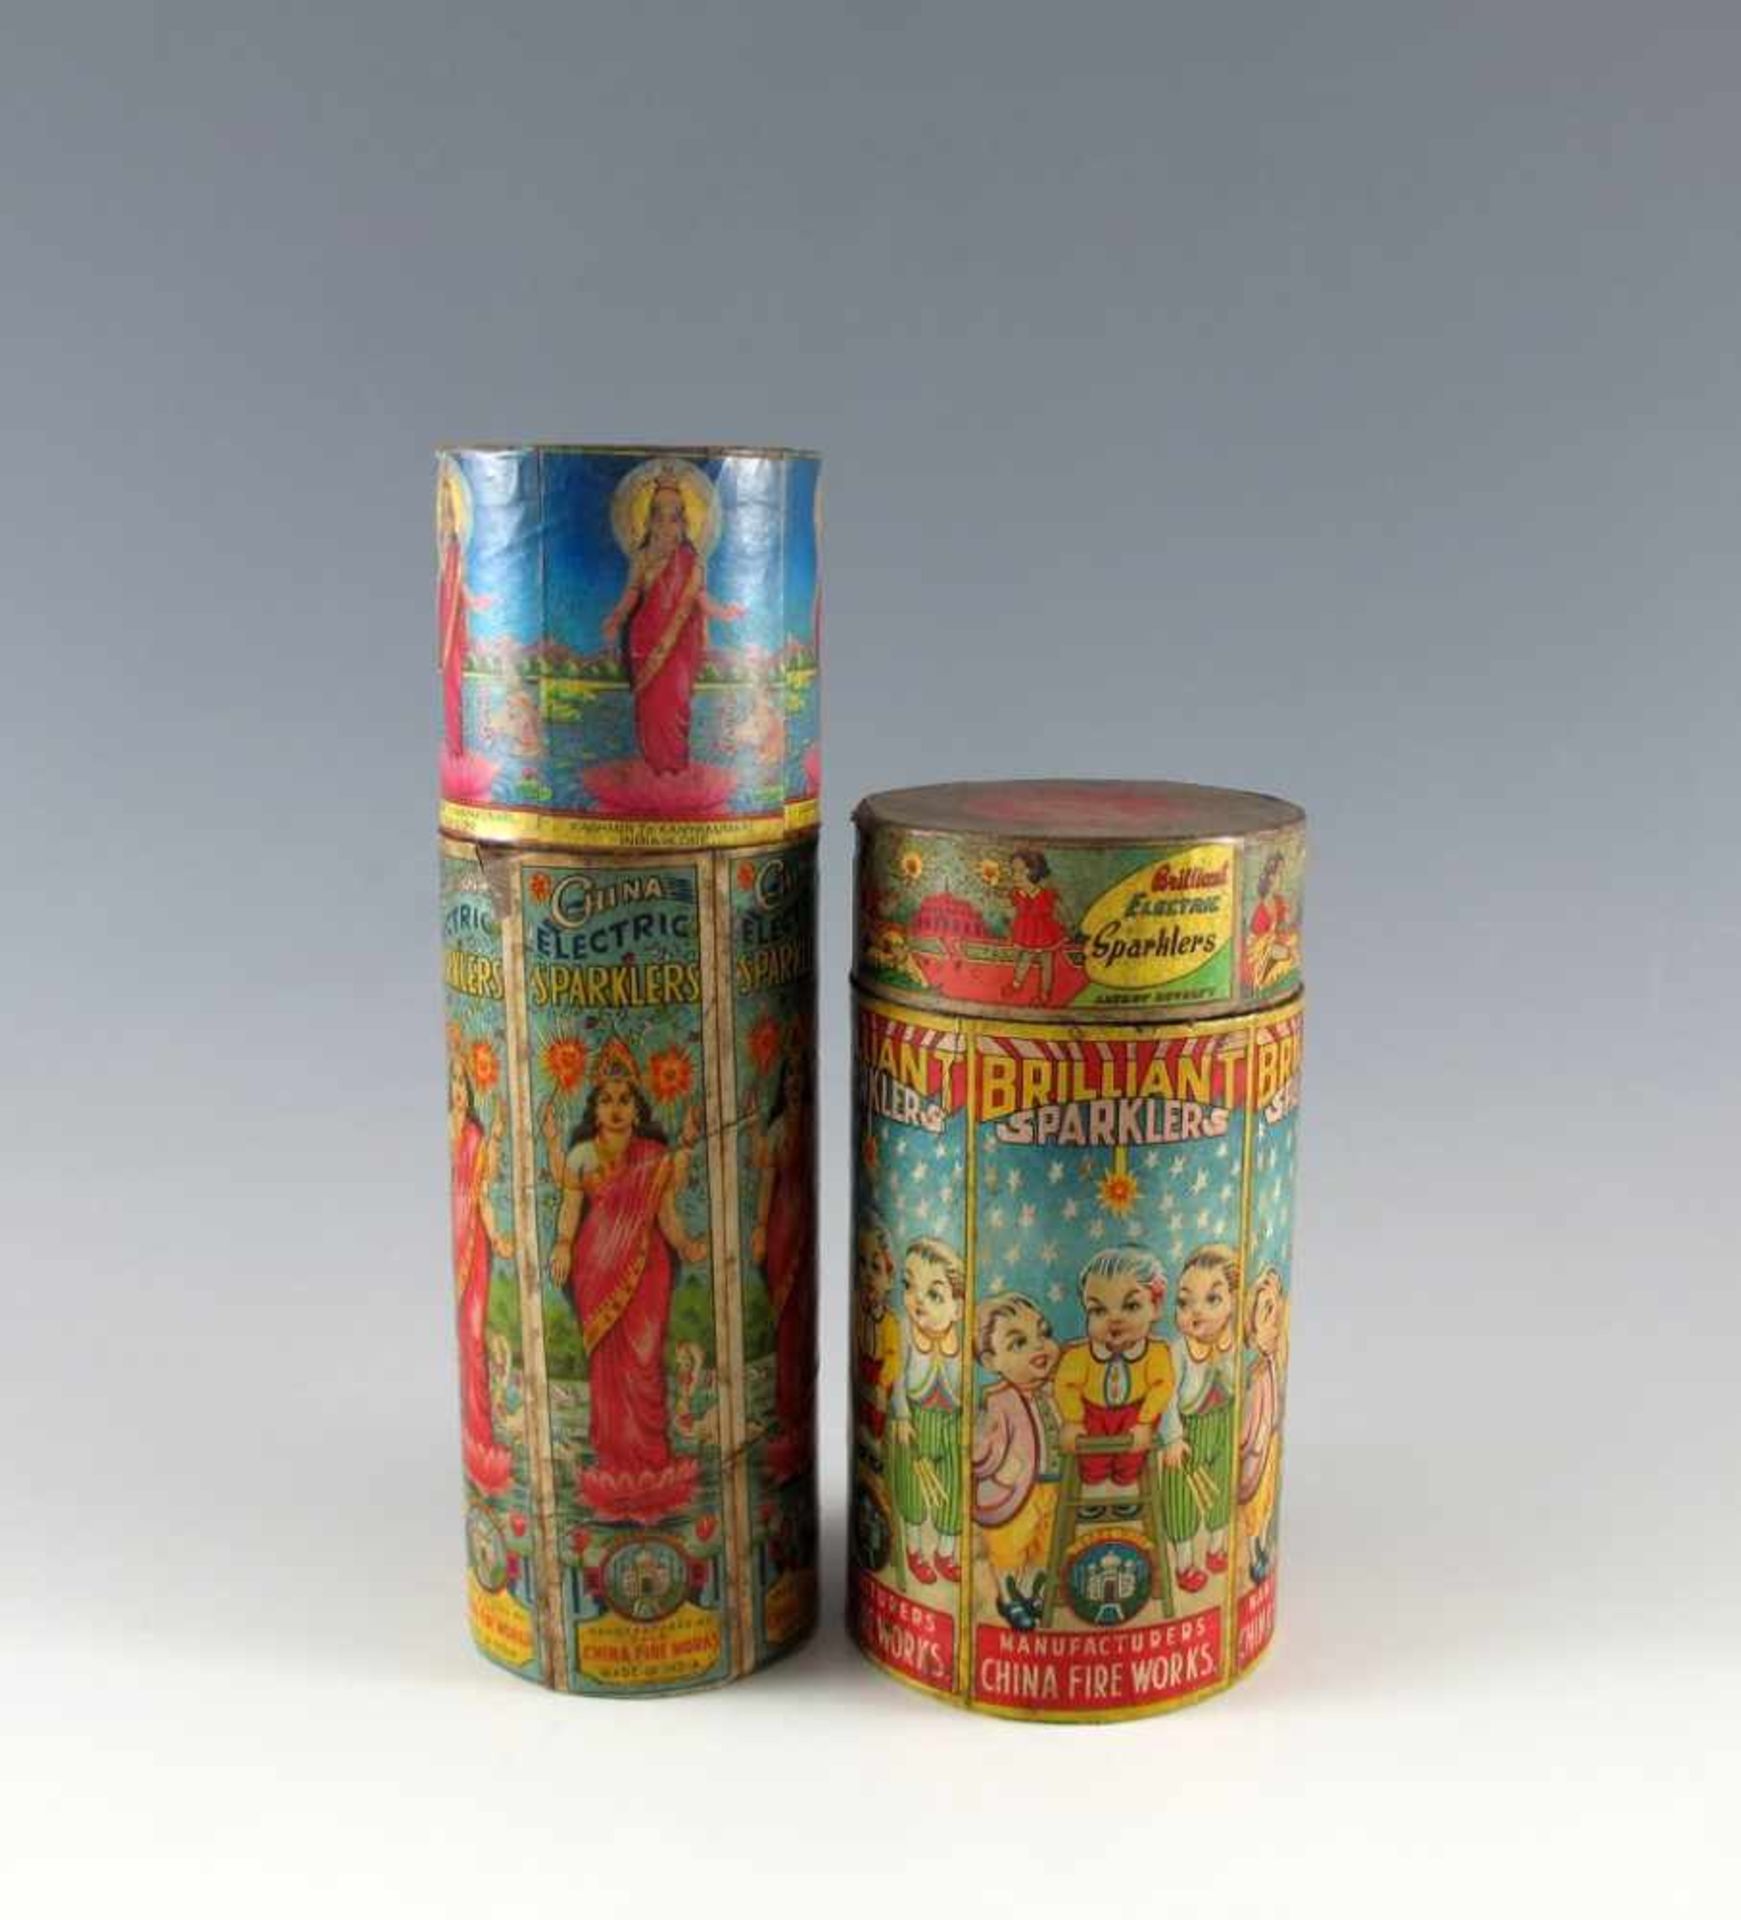 Zwei zylindrische Dosen, ehemals beinhaltend Feuerwerkskörper: "China Electric Sparklers" und "